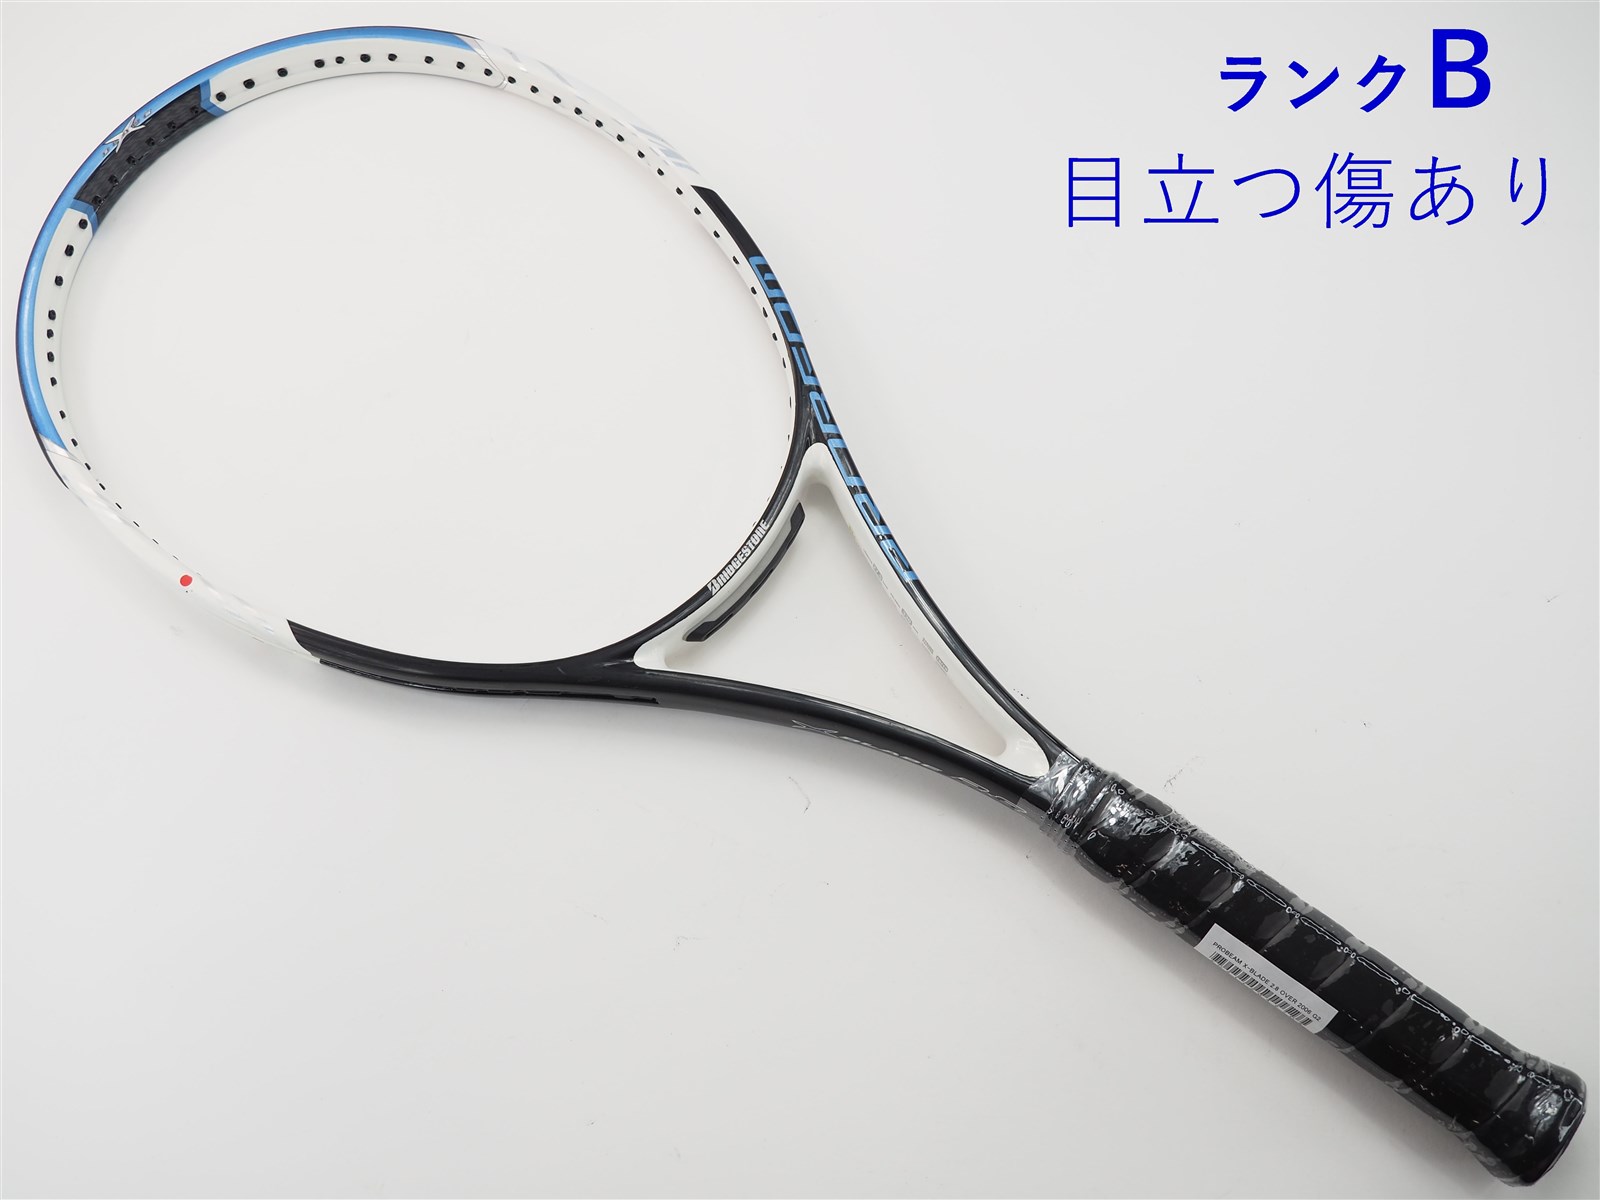 テニスラケット ブリヂストン プロビーム エックスブレード 2.9 MP 2006年モデル (G2)BRIDGESTONE PROBEAM X-BLADE 2.9 MP 200698平方インチ長さ